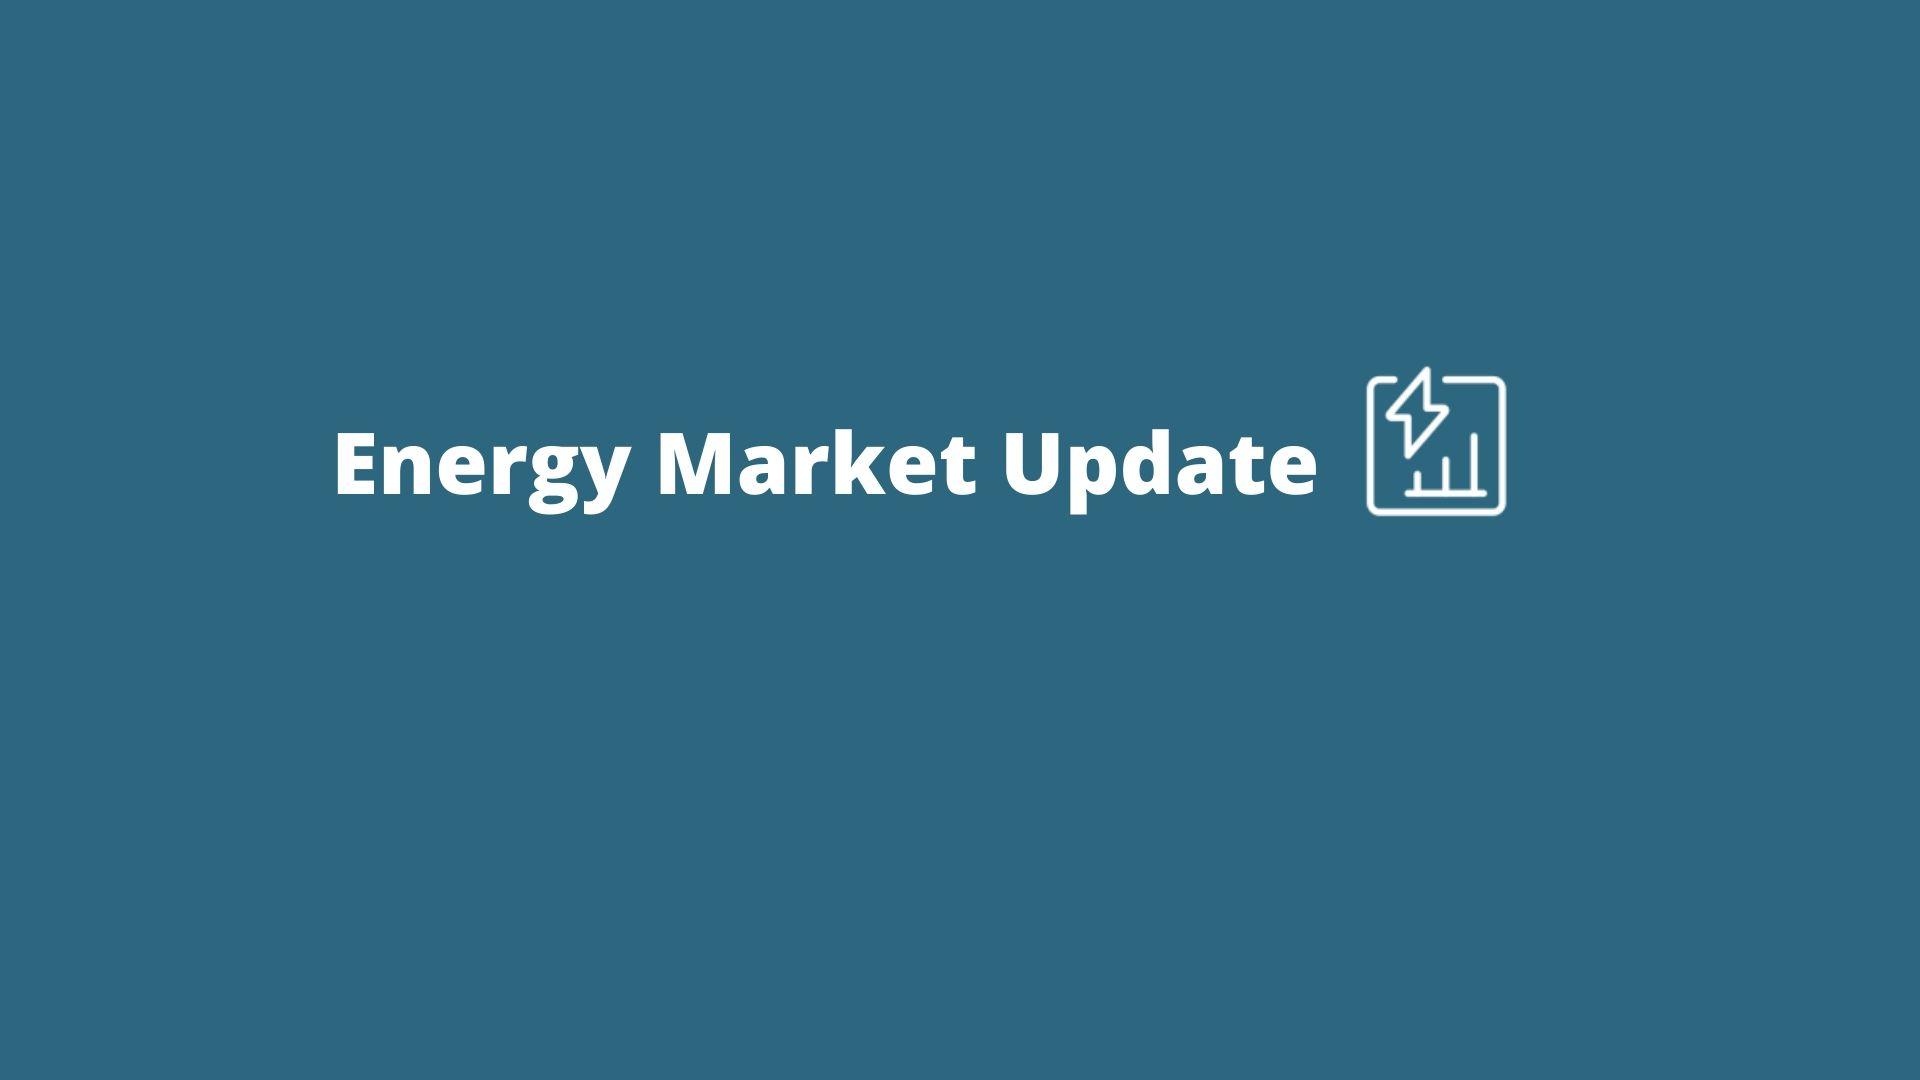 Energy Market Update Tile